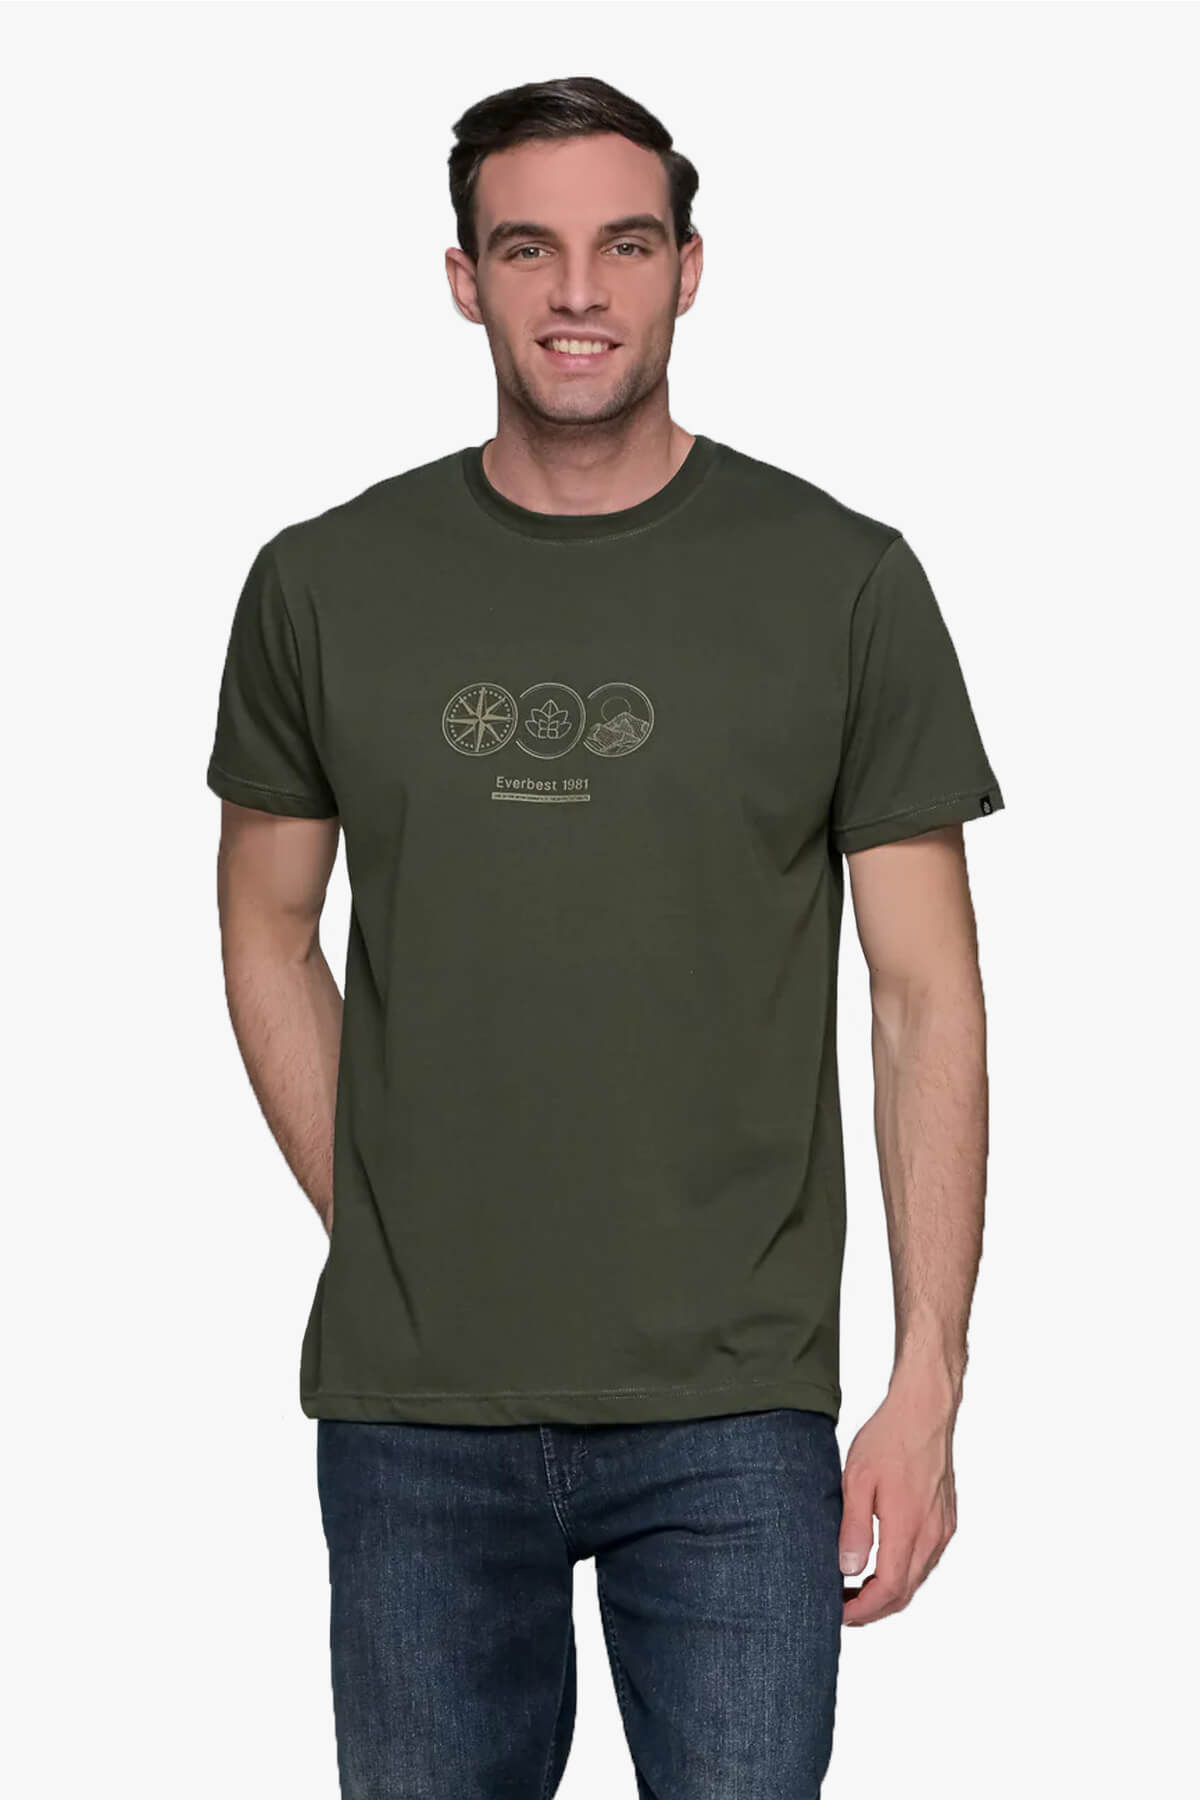 Everbest T-Shirt Με Σχέδιο Capillary Circle